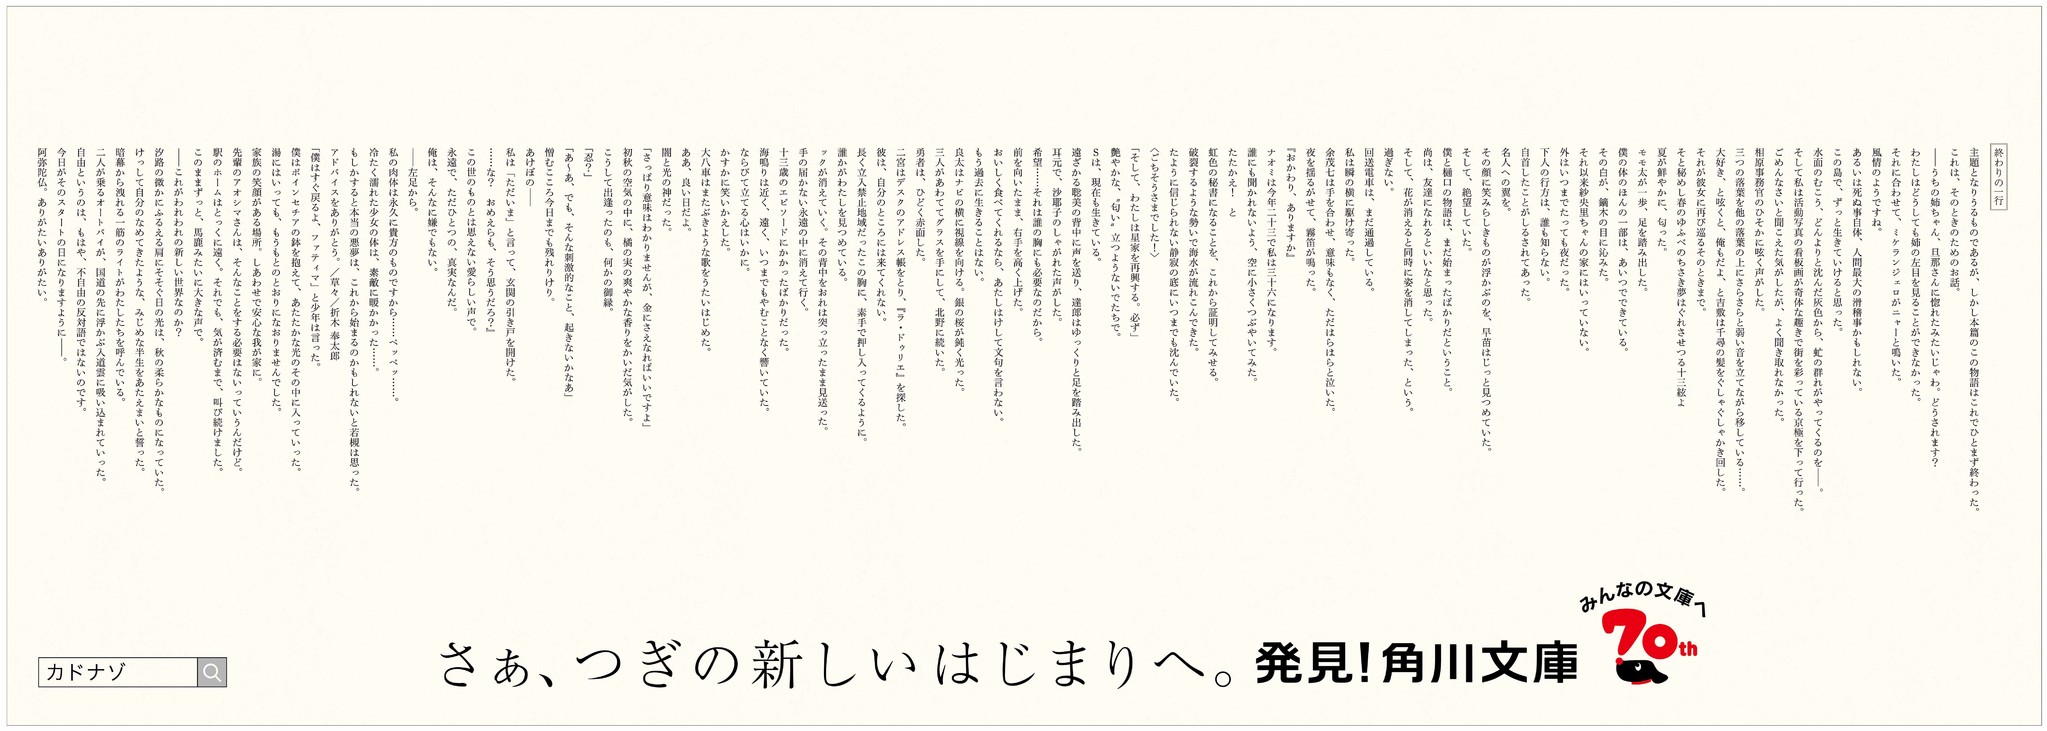 本の虫たちへの挑戦状 超難問クイズ カドナゾ 挑戦者募集 株式会社kadokawaのプレスリリース